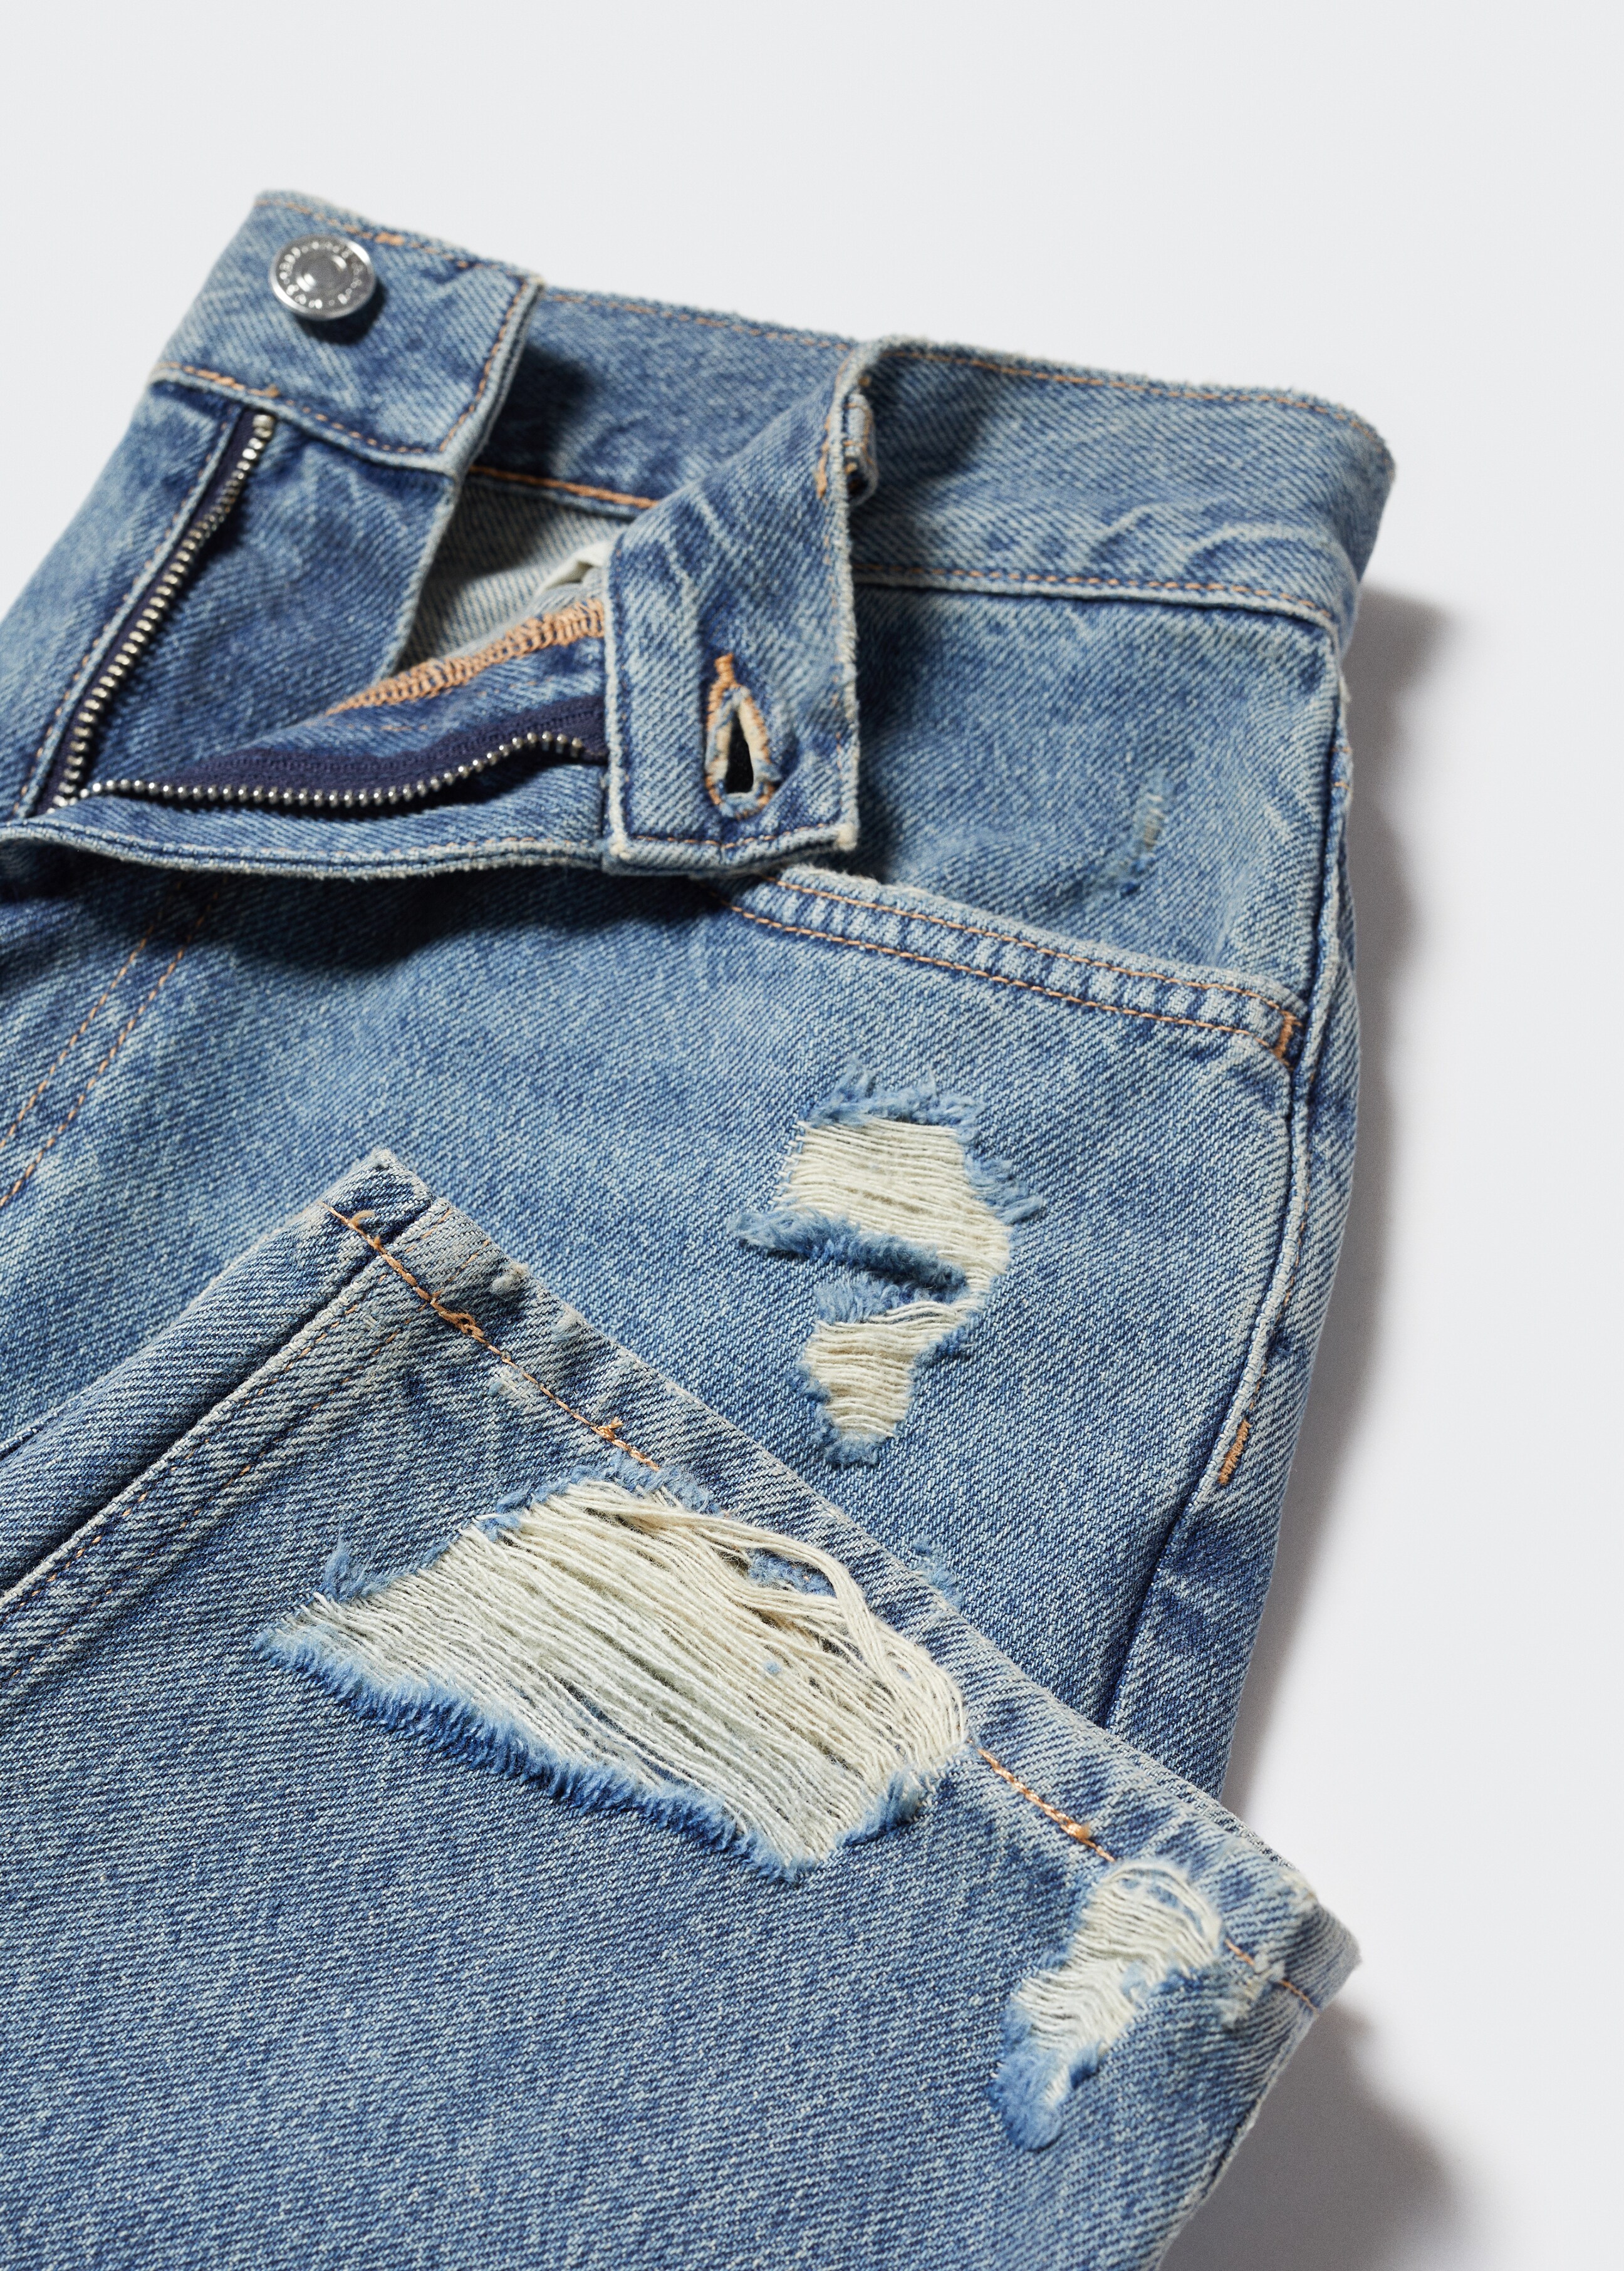 Jeans rectos tiro alto rotos - Detalle del artículo 8